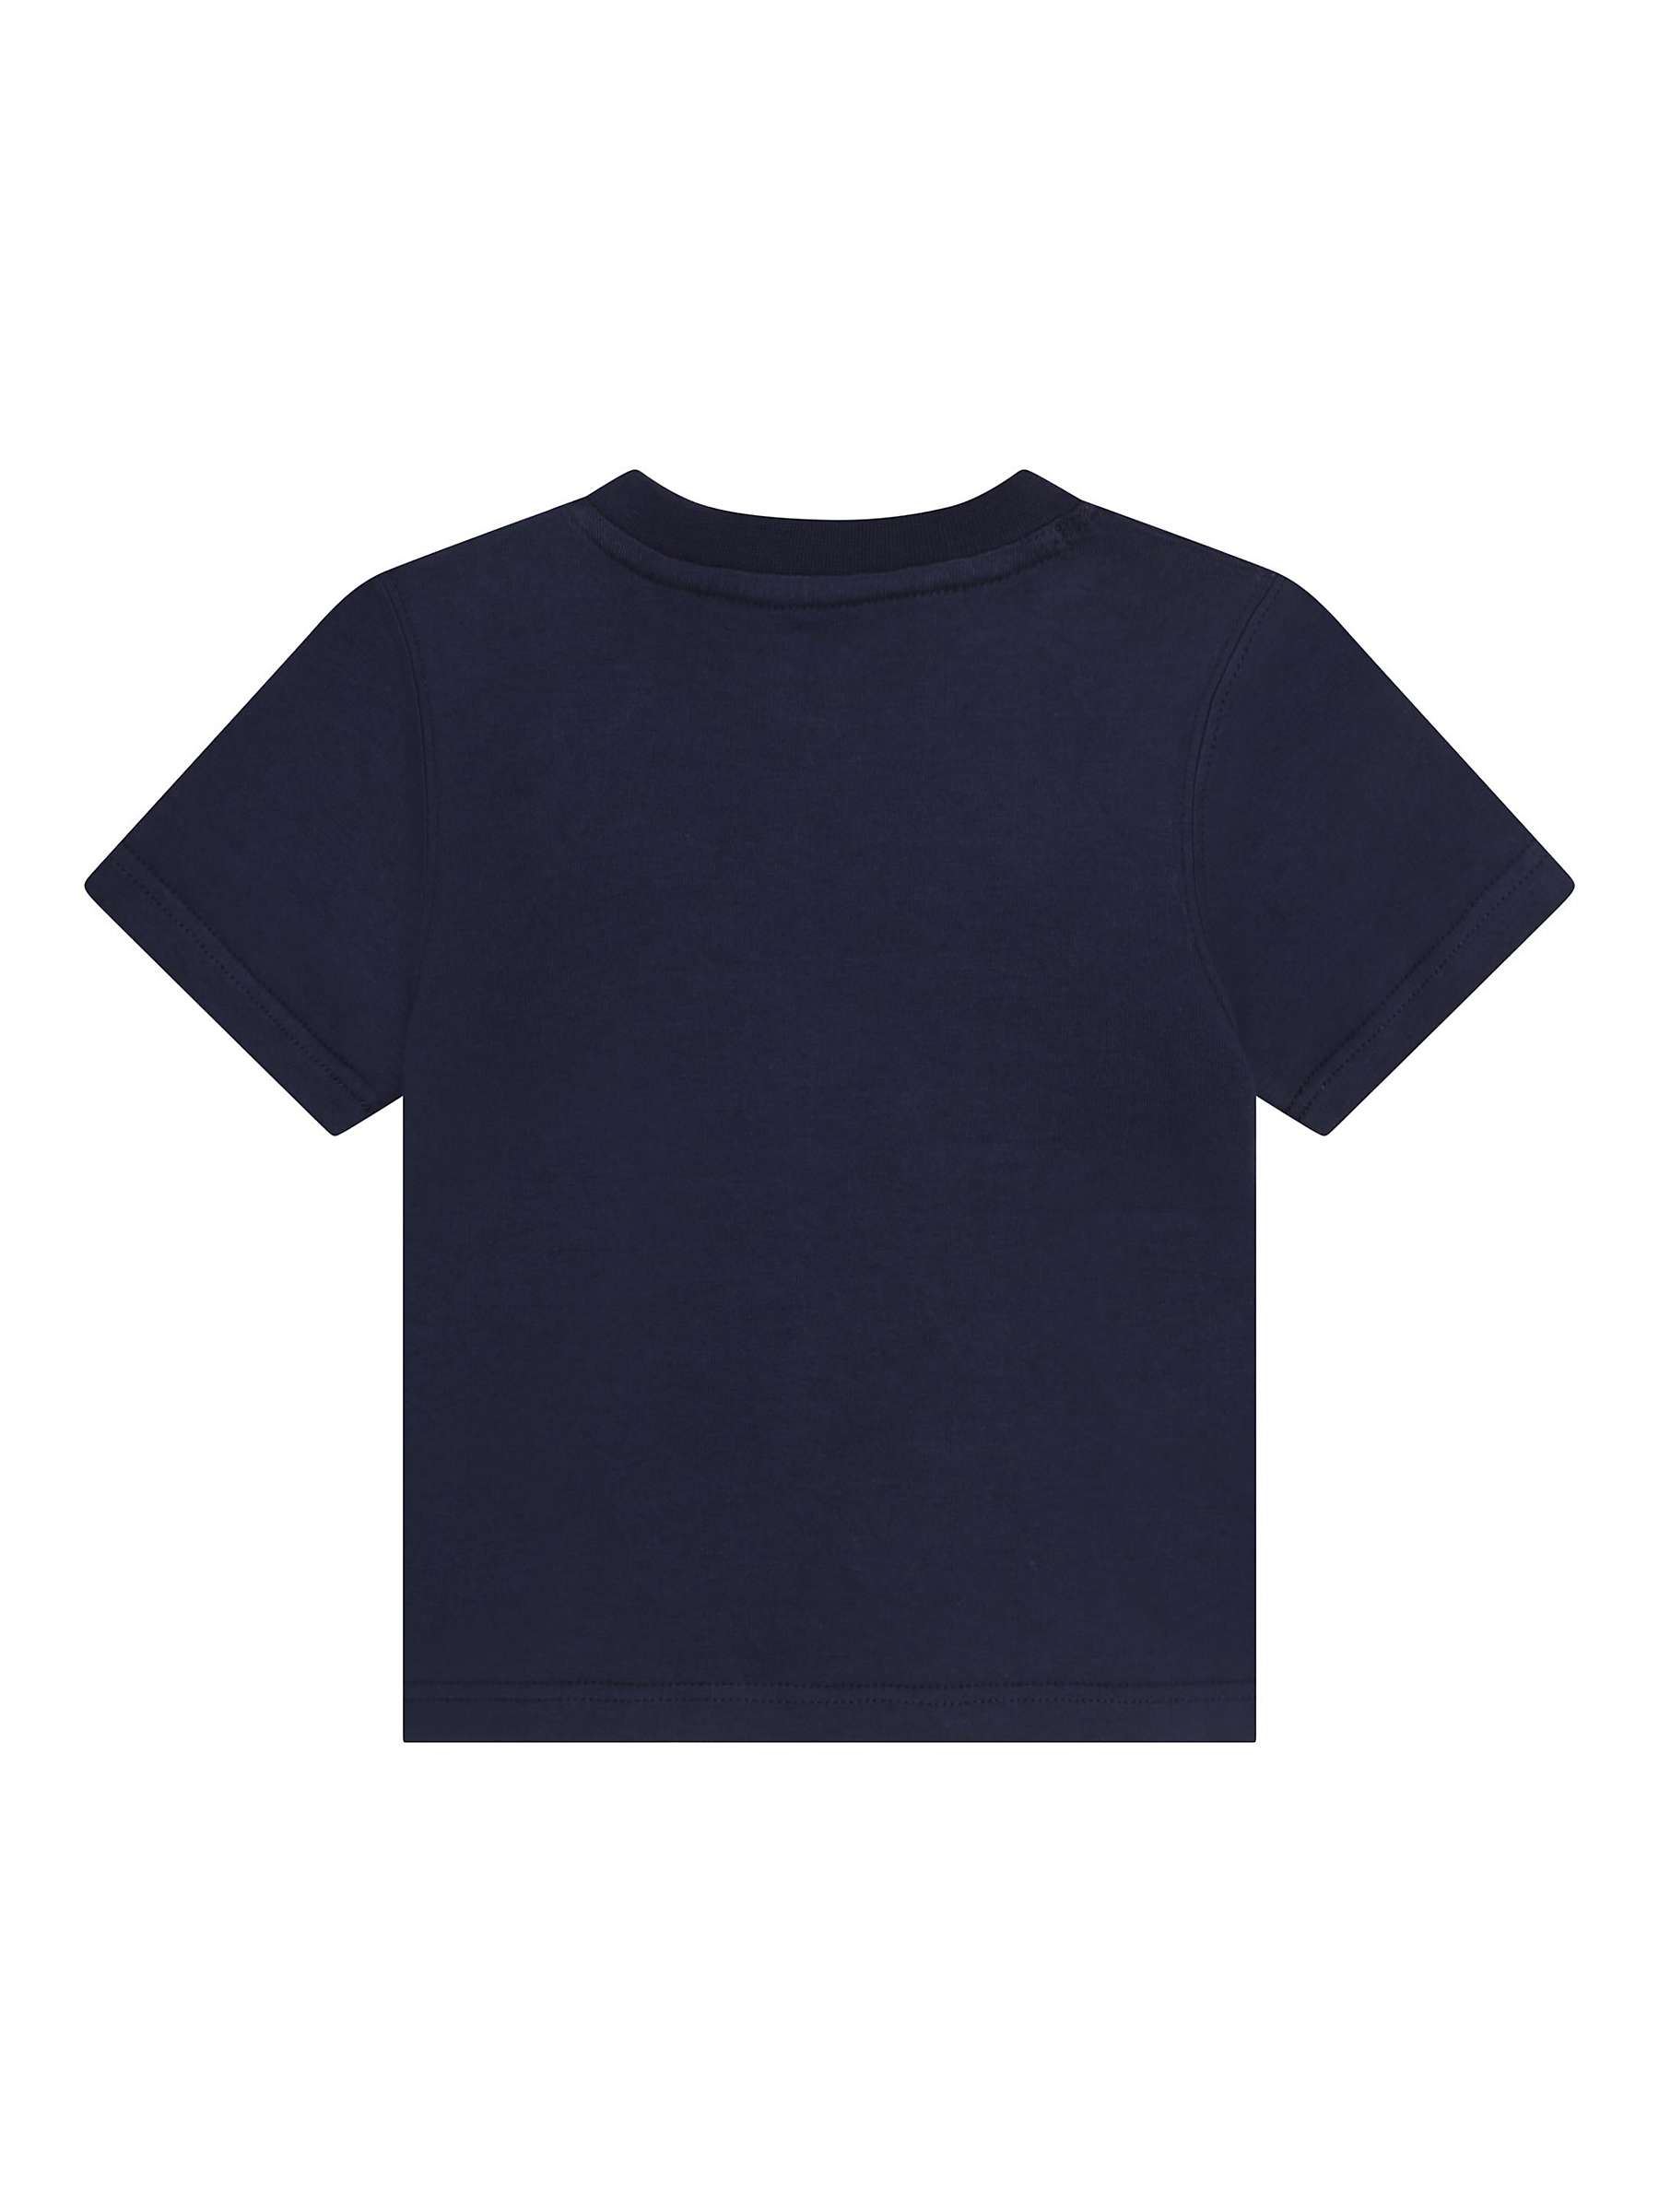 Timberland Baby Graphic Logo Print T-Shirt, Dark Blue at John Lewis ...